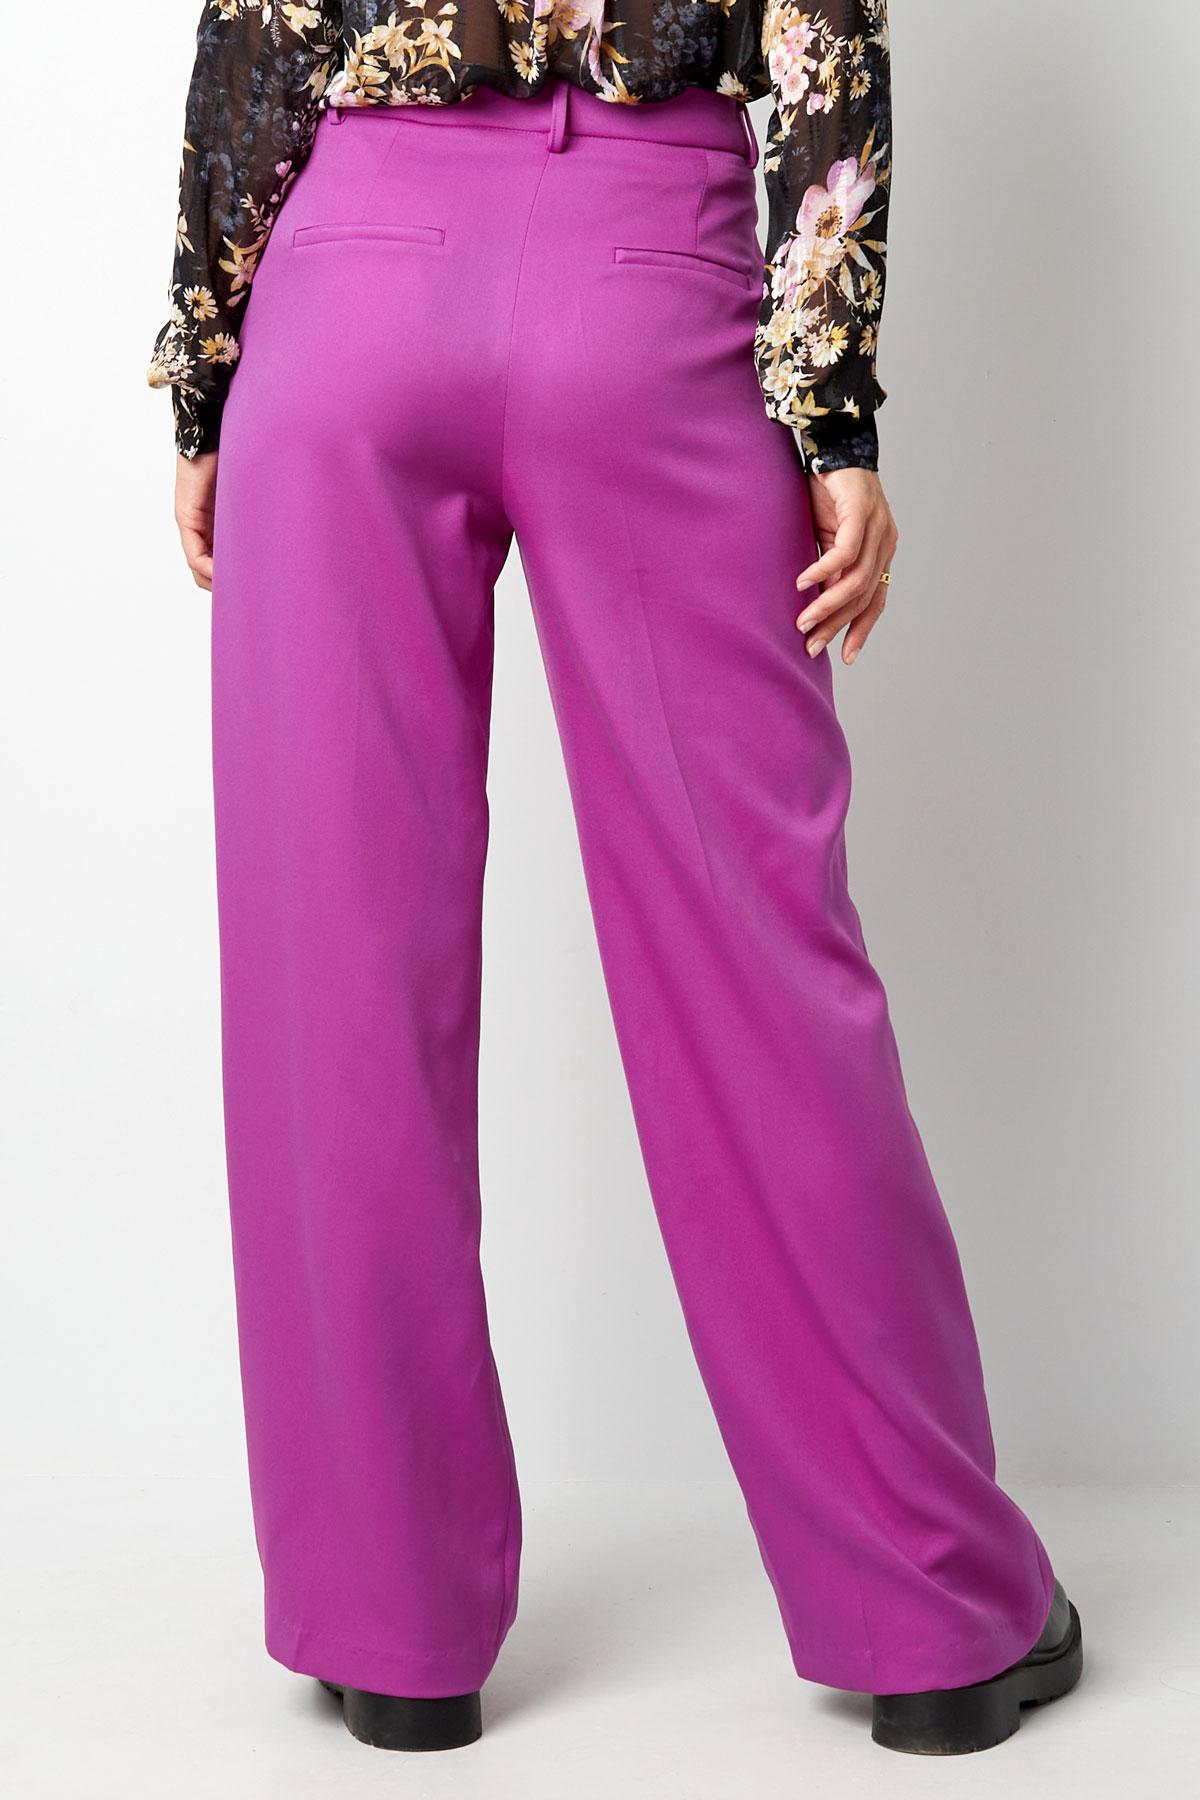 Pantalón plisado - violeta Imagen12